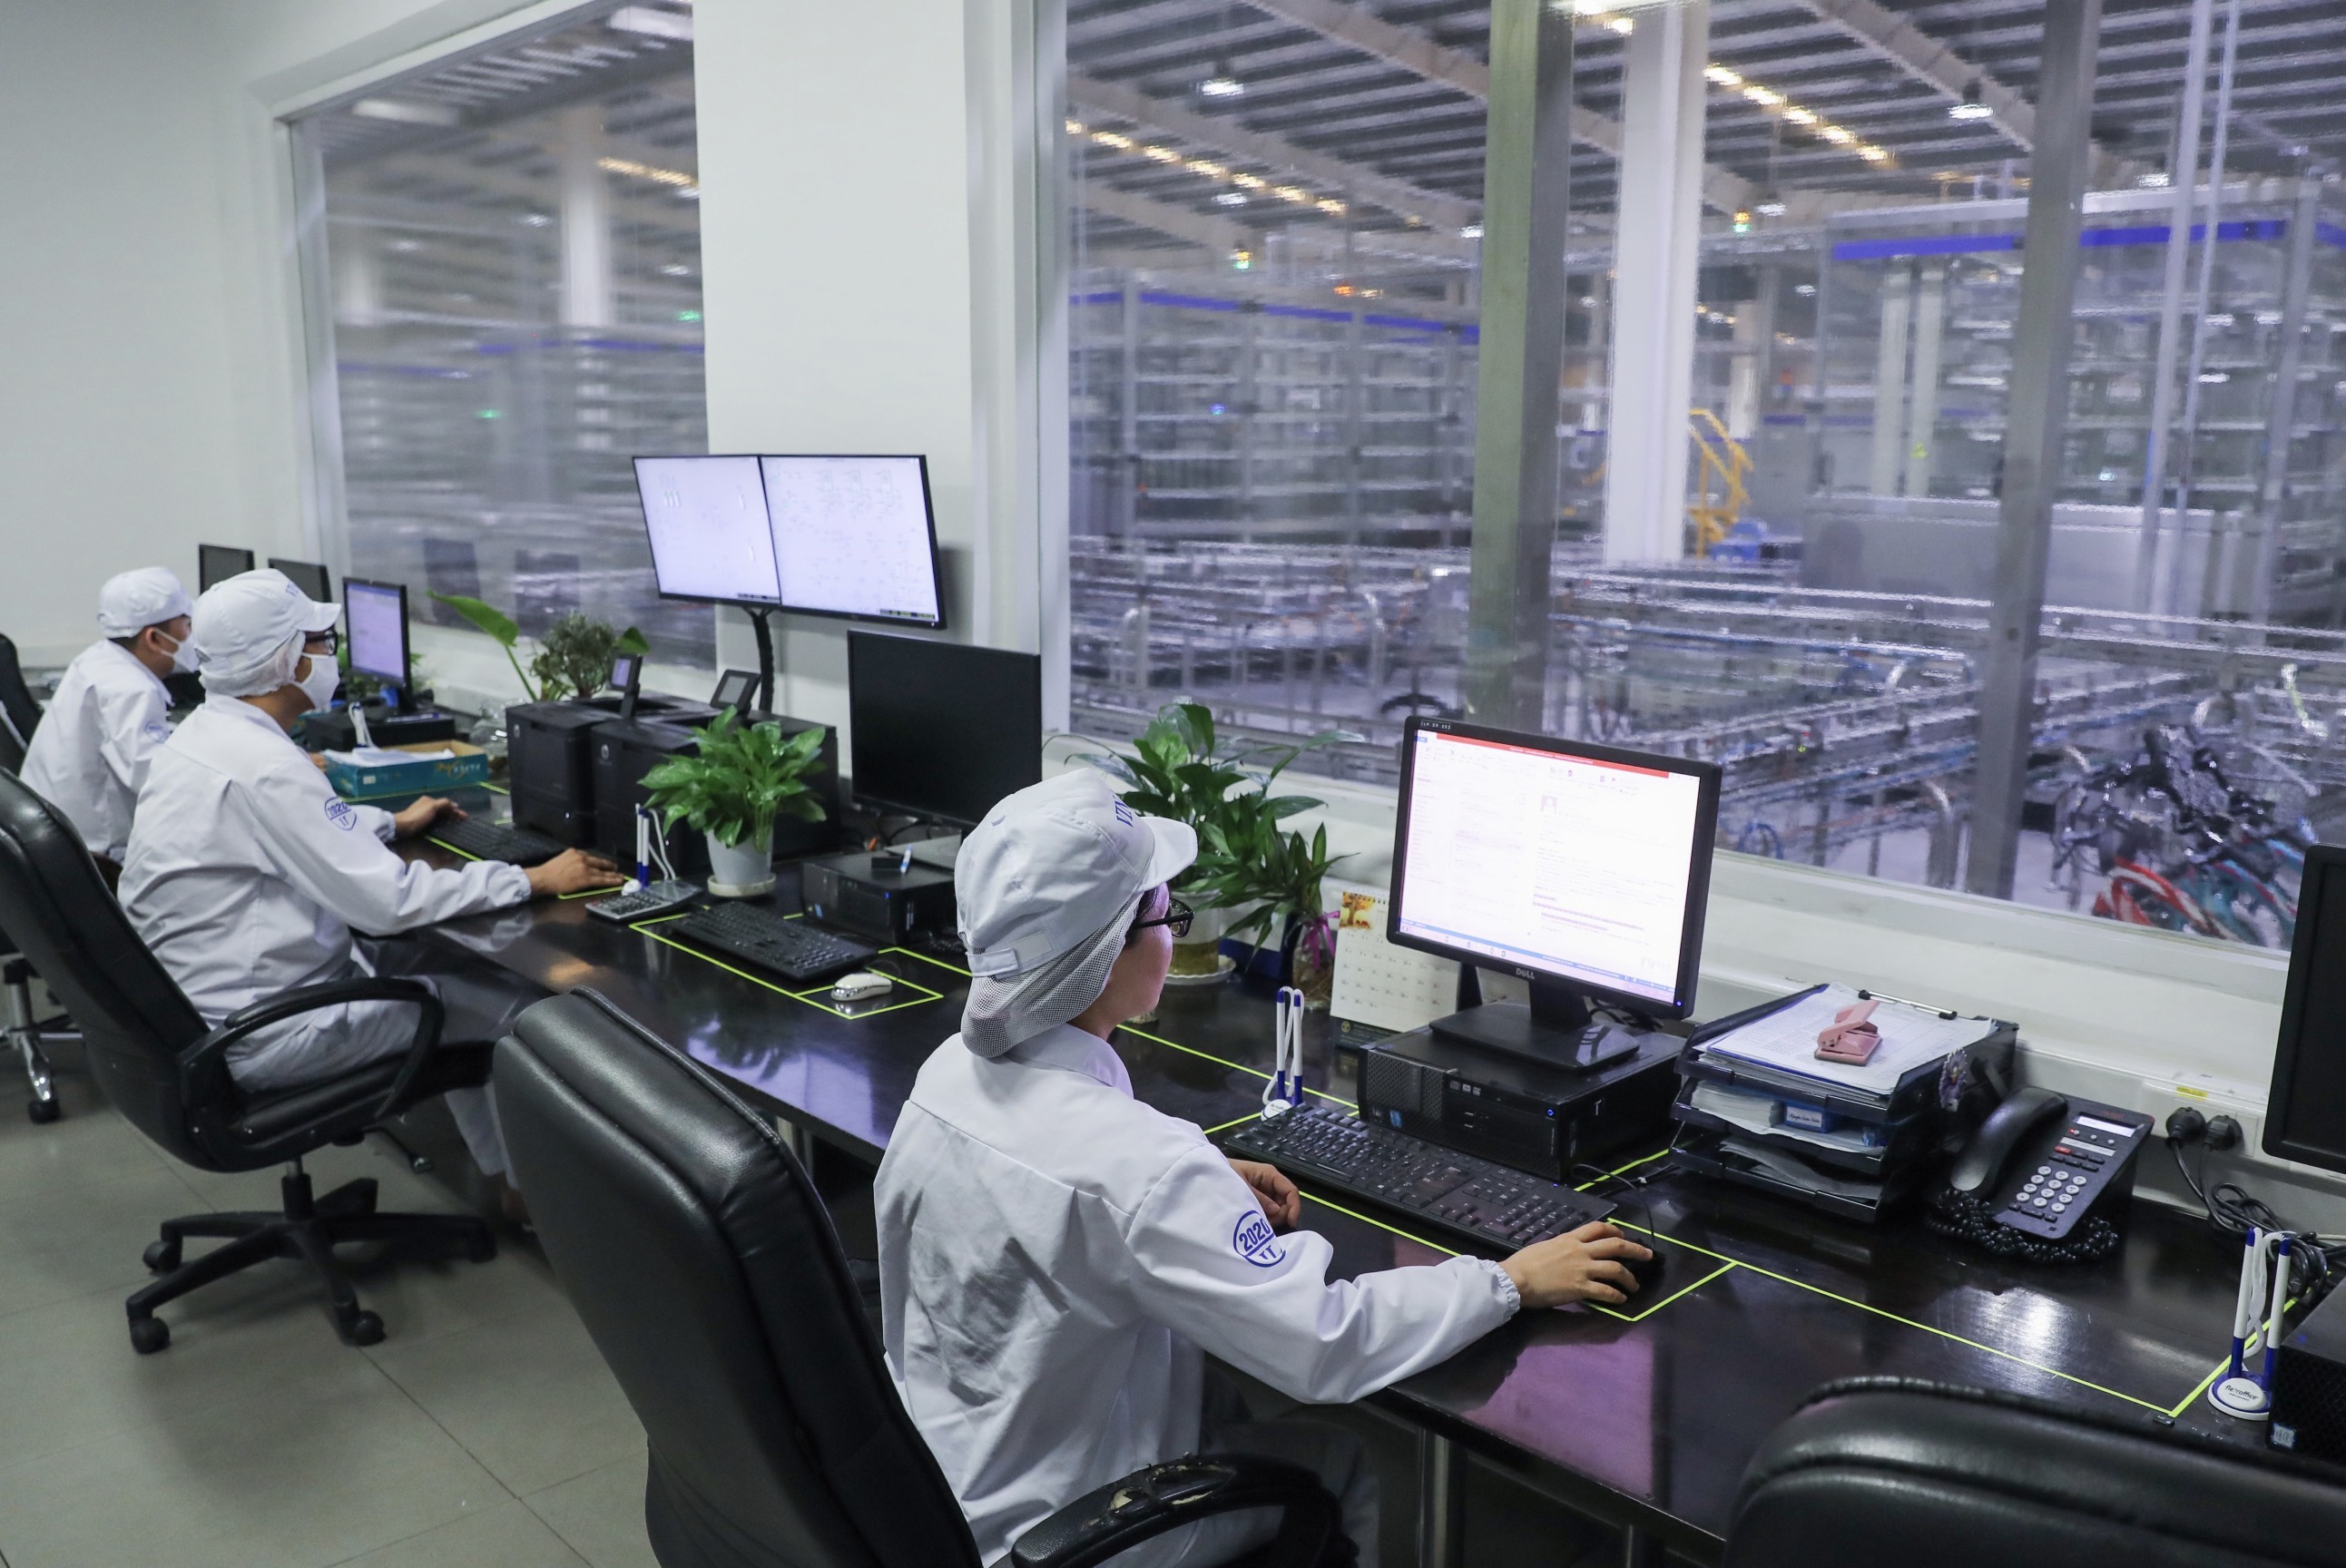 Các nhà máy của Vinamilk đều có tính tự động hóa, quản lý trung tâm, giúp nâng cao chất lượng

sản phẩm, tối ưu hóa sản xuất